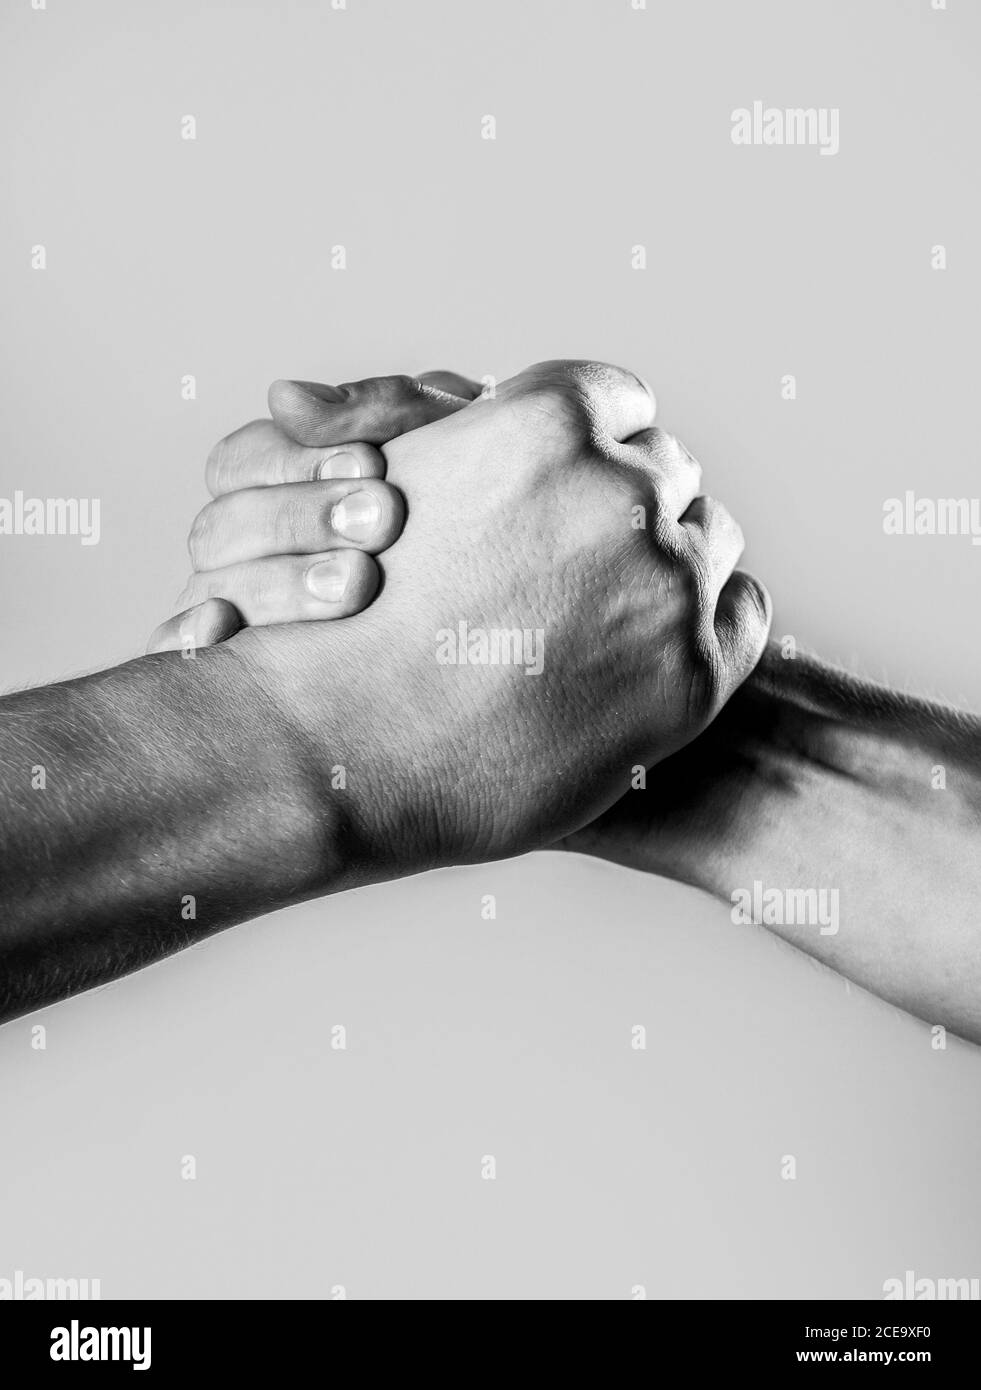 Zwei Hände, isolierter Arm, helfende Hand eines Freundes. Handschlag, Arme. Freundliche Handshake, Freunde Gruß. Männliche Hand in Handschlag vereint. Schwarz und Stockfoto